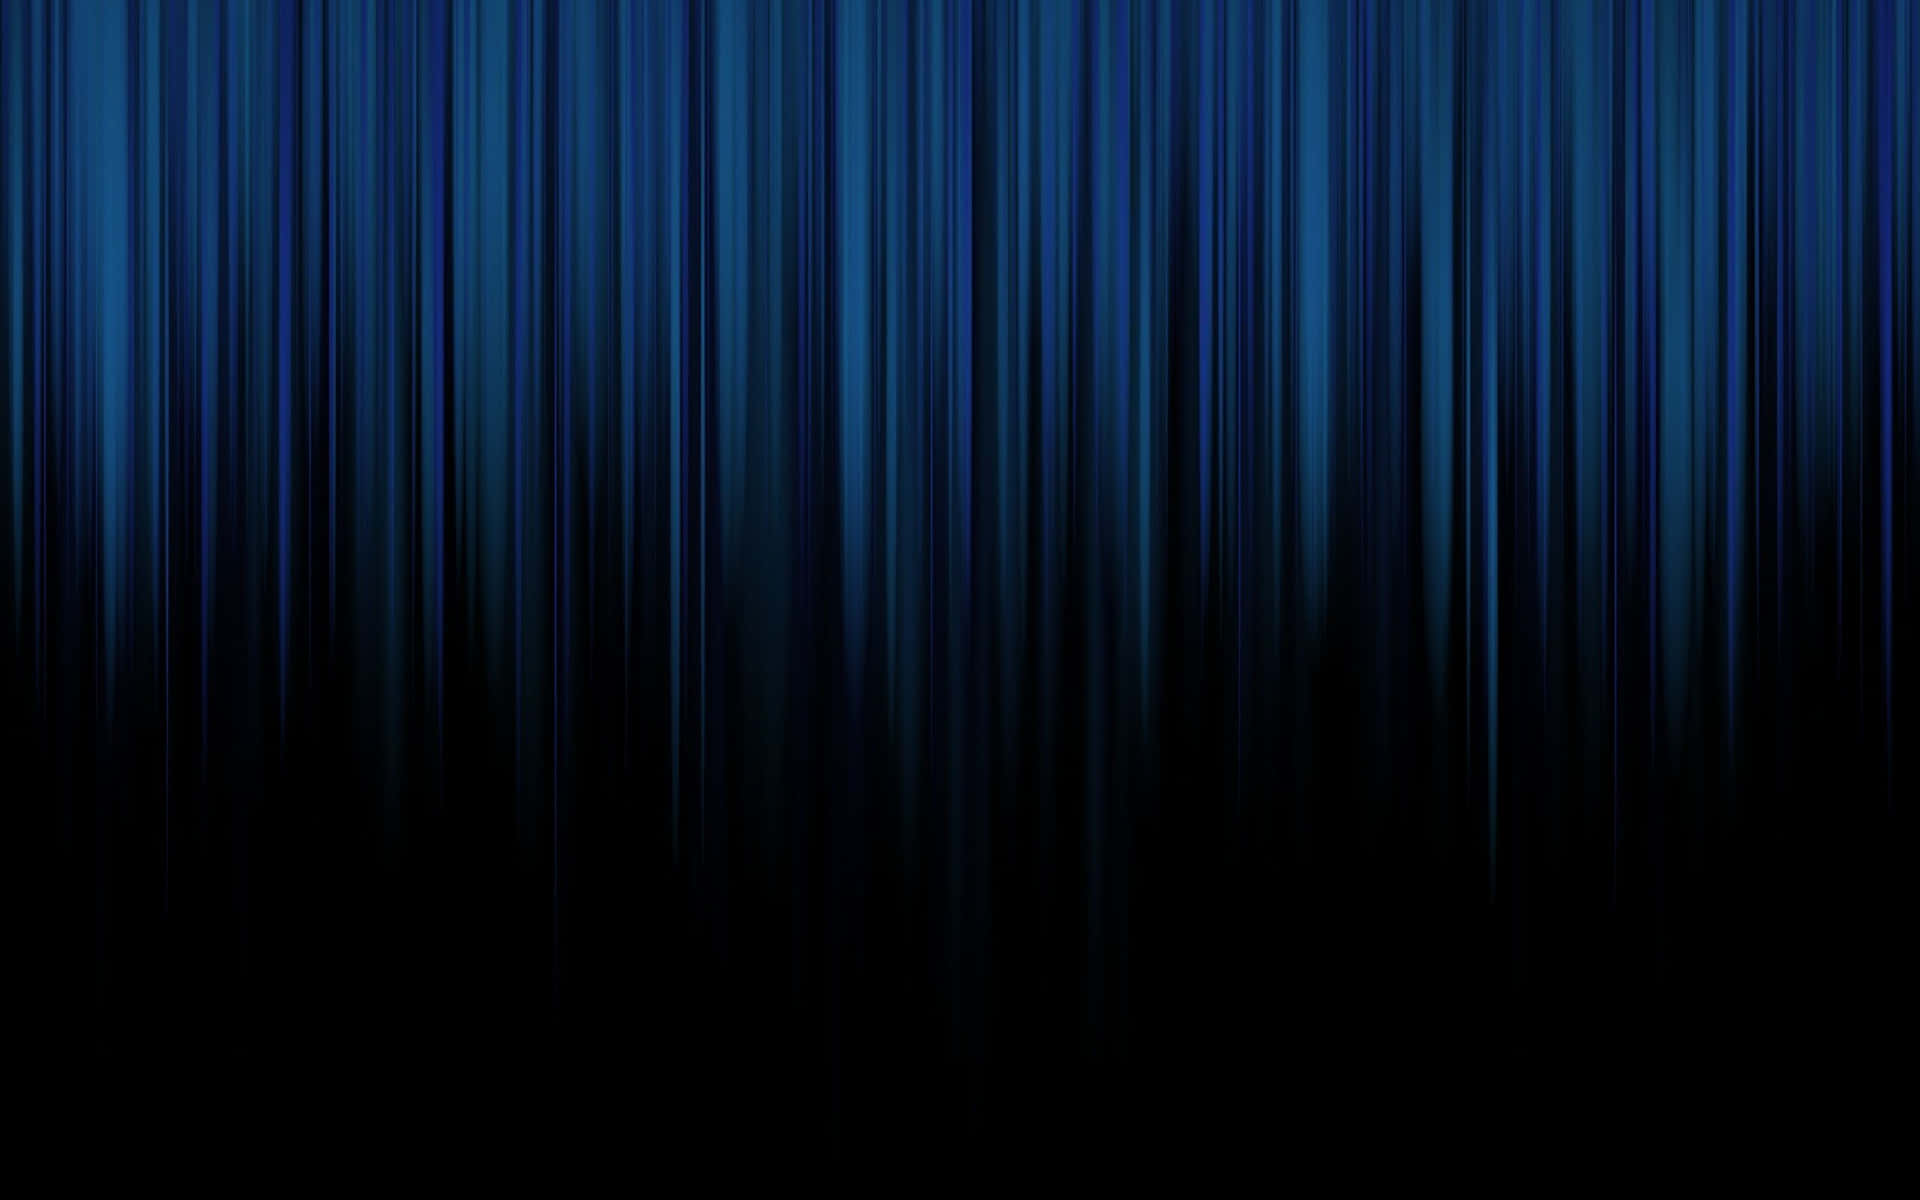 Dark Curtain Gradient Blue And Black Background